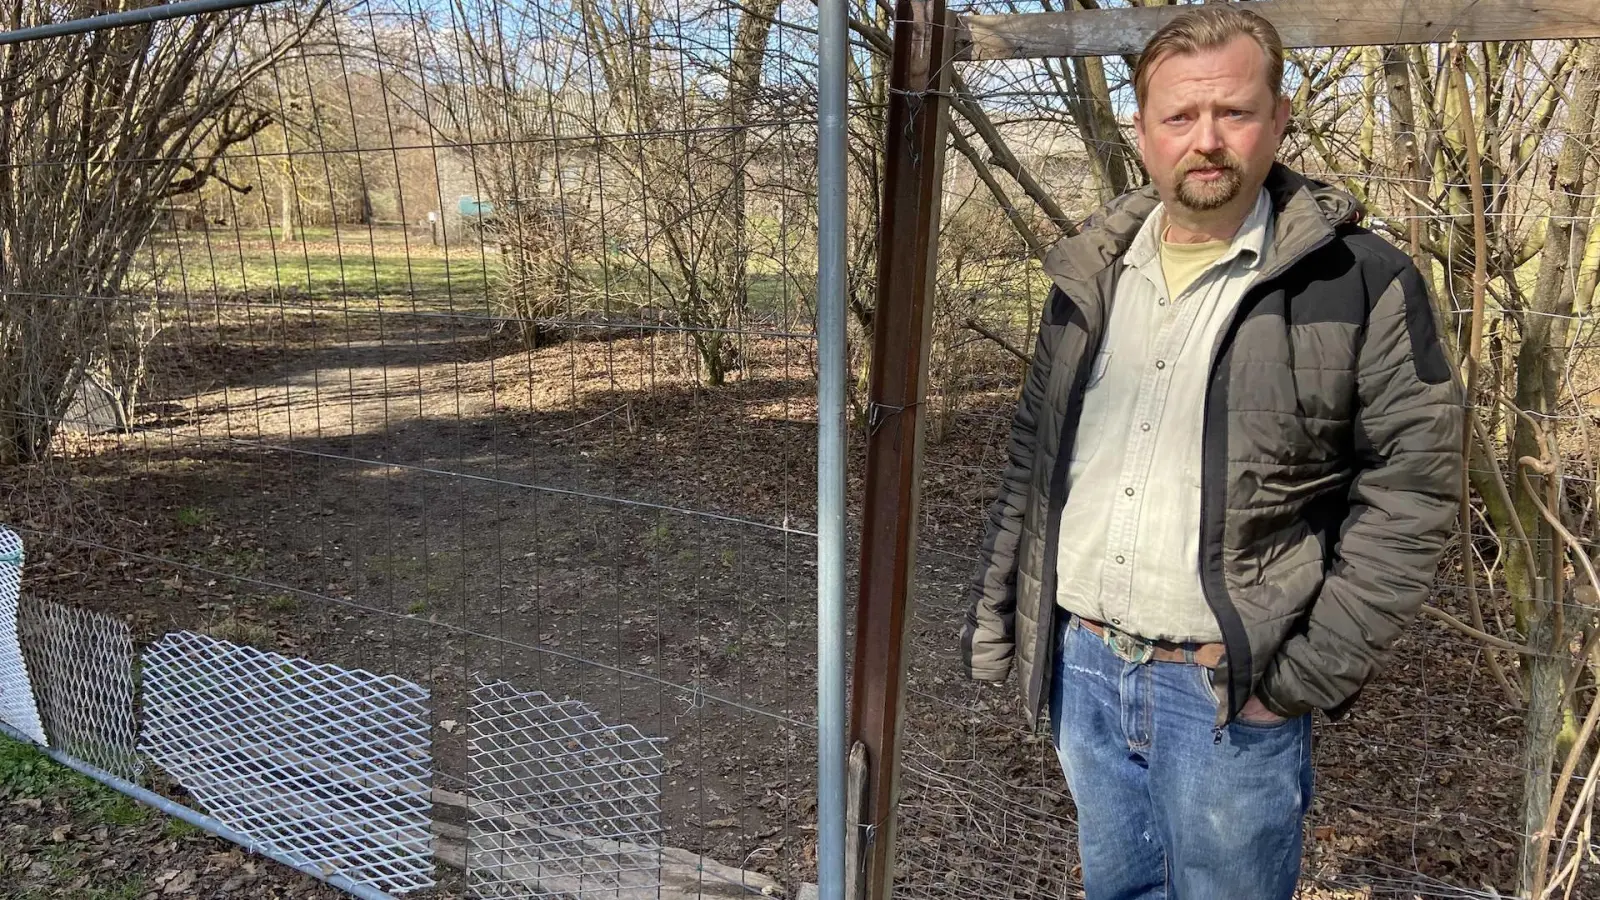 Laut Holger Weichhan soll ein Unbekannter dieses Tor auf seinem Grundstück geöffnet und so den Ausbruch der Herdenschutzhunde ermöglicht haben. (Foto: taucha-kompakt.de)